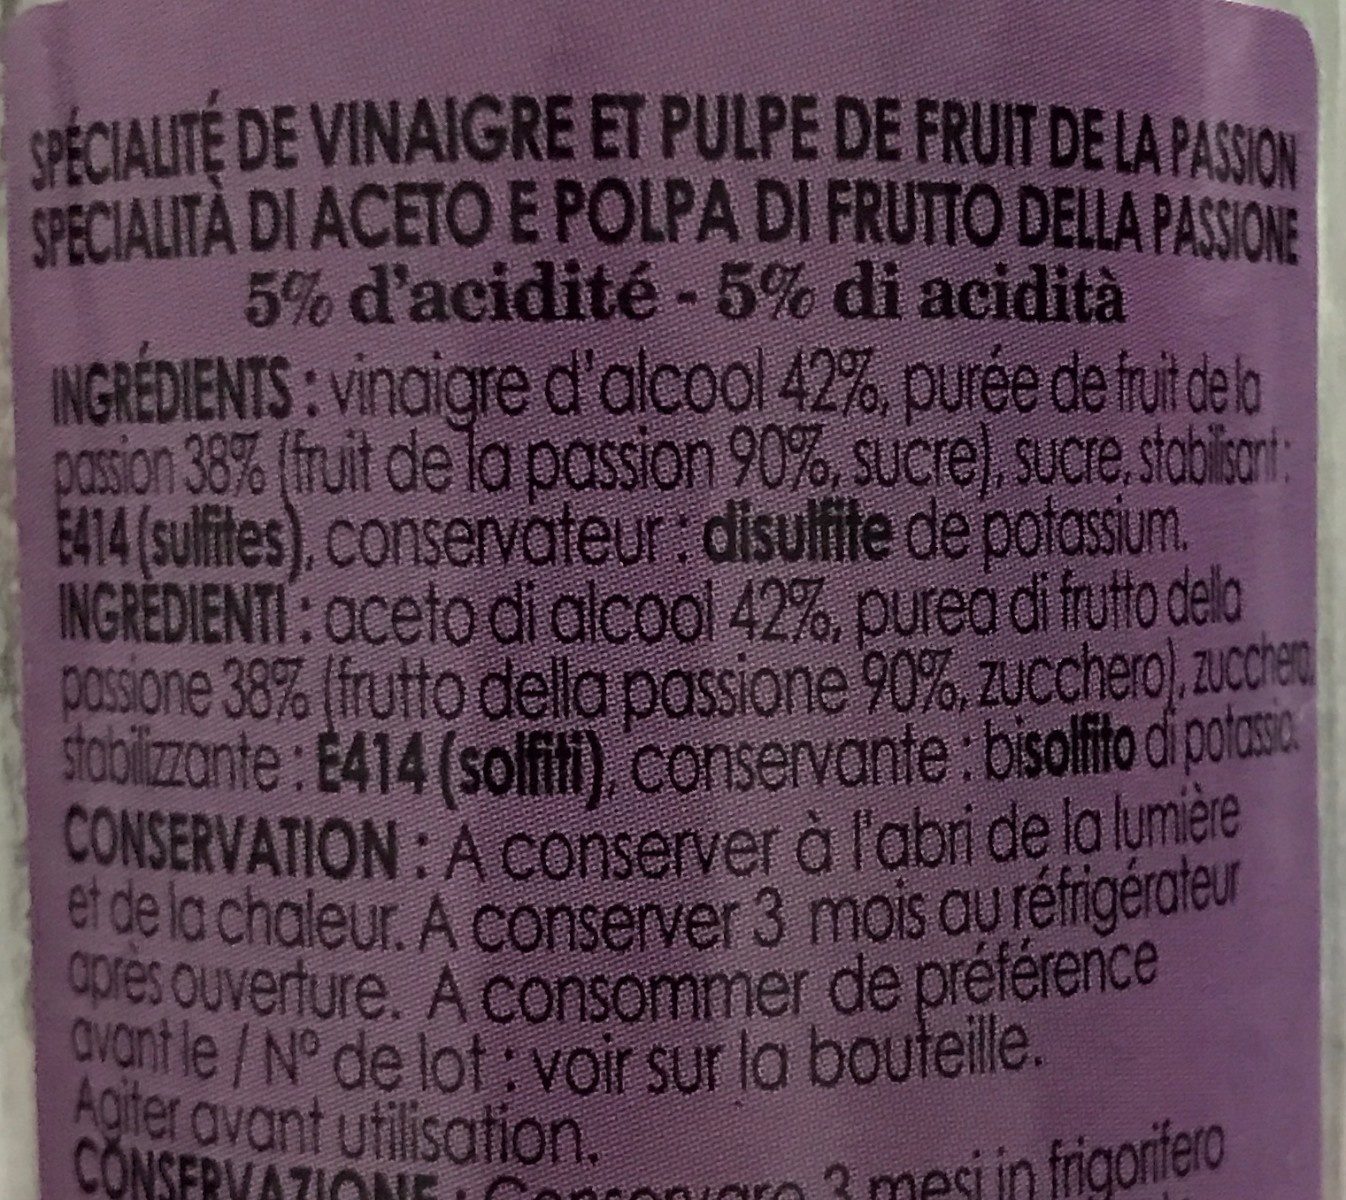 Vinaigre et pulpe de fruit de la passion - Ingredients - fr